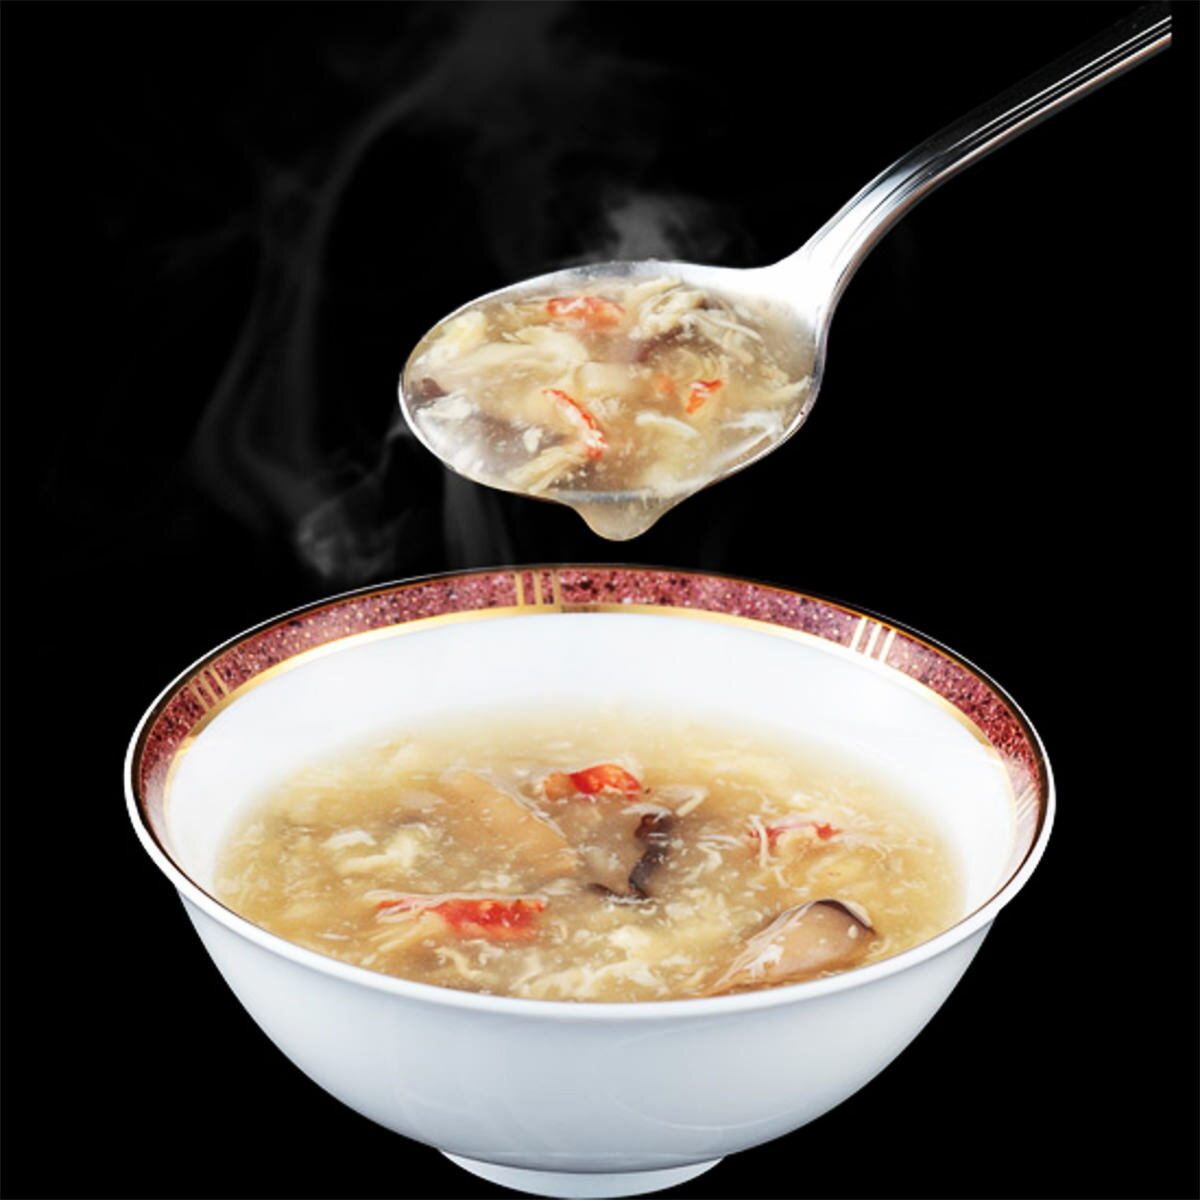 【10%割引】濃縮ずわいがにスープ 2袋入20箱 スープ 惣菜 海鮮 ずわいがに 濃厚 カニ コラーゲン 海鮮スープ 濃縮タイプ 蟹 雑炊の素 簡単